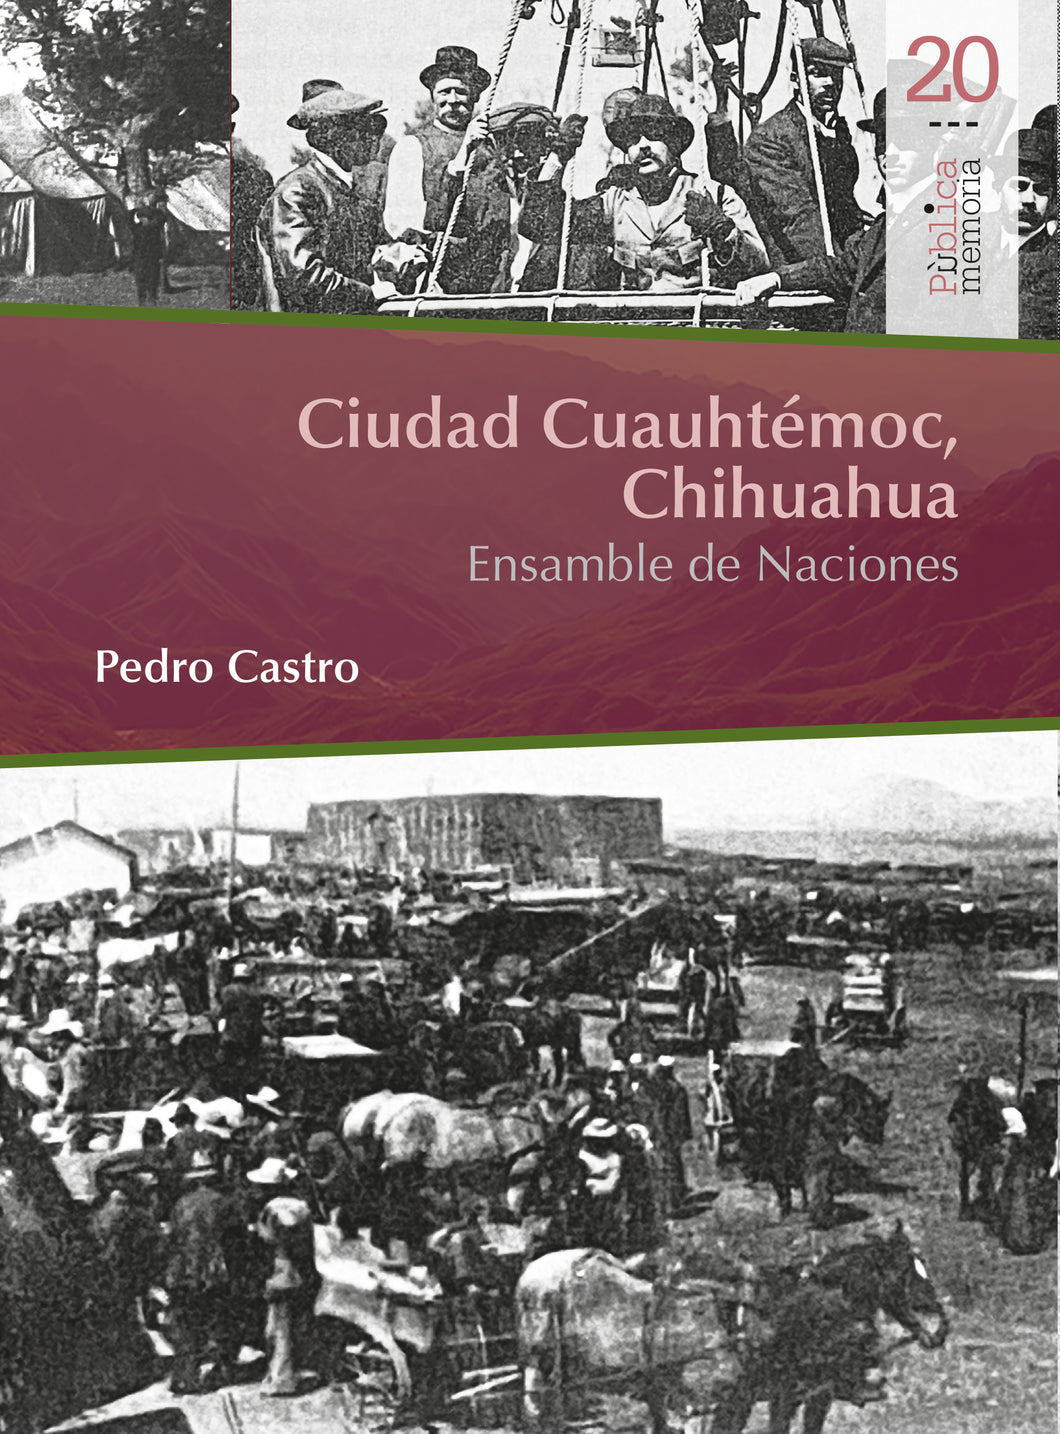 Ciudad Cuauhtémoc, Chihuahua. Ensamble de Naciones - Pedro Castro